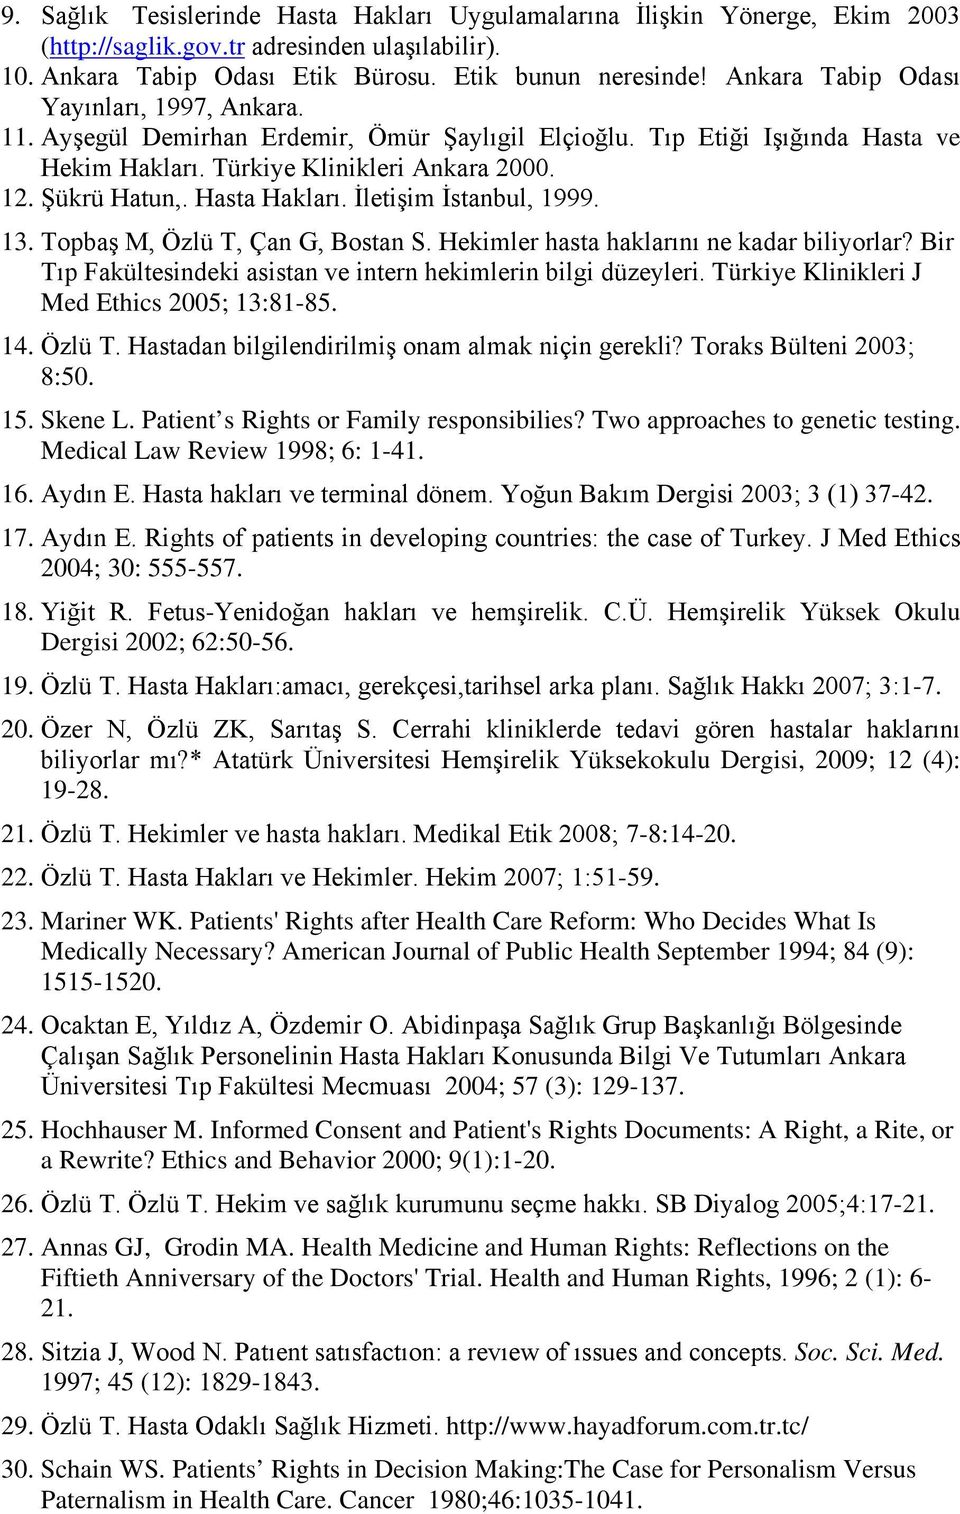 Hasta Hakları. İletişim İstanbul, 1999. 13. Topbaş M, Özlü T, Çan G, Bostan S. Hekimler hasta haklarını ne kadar biliyorlar? Bir Tıp Fakültesindeki asistan ve intern hekimlerin bilgi düzeyleri.